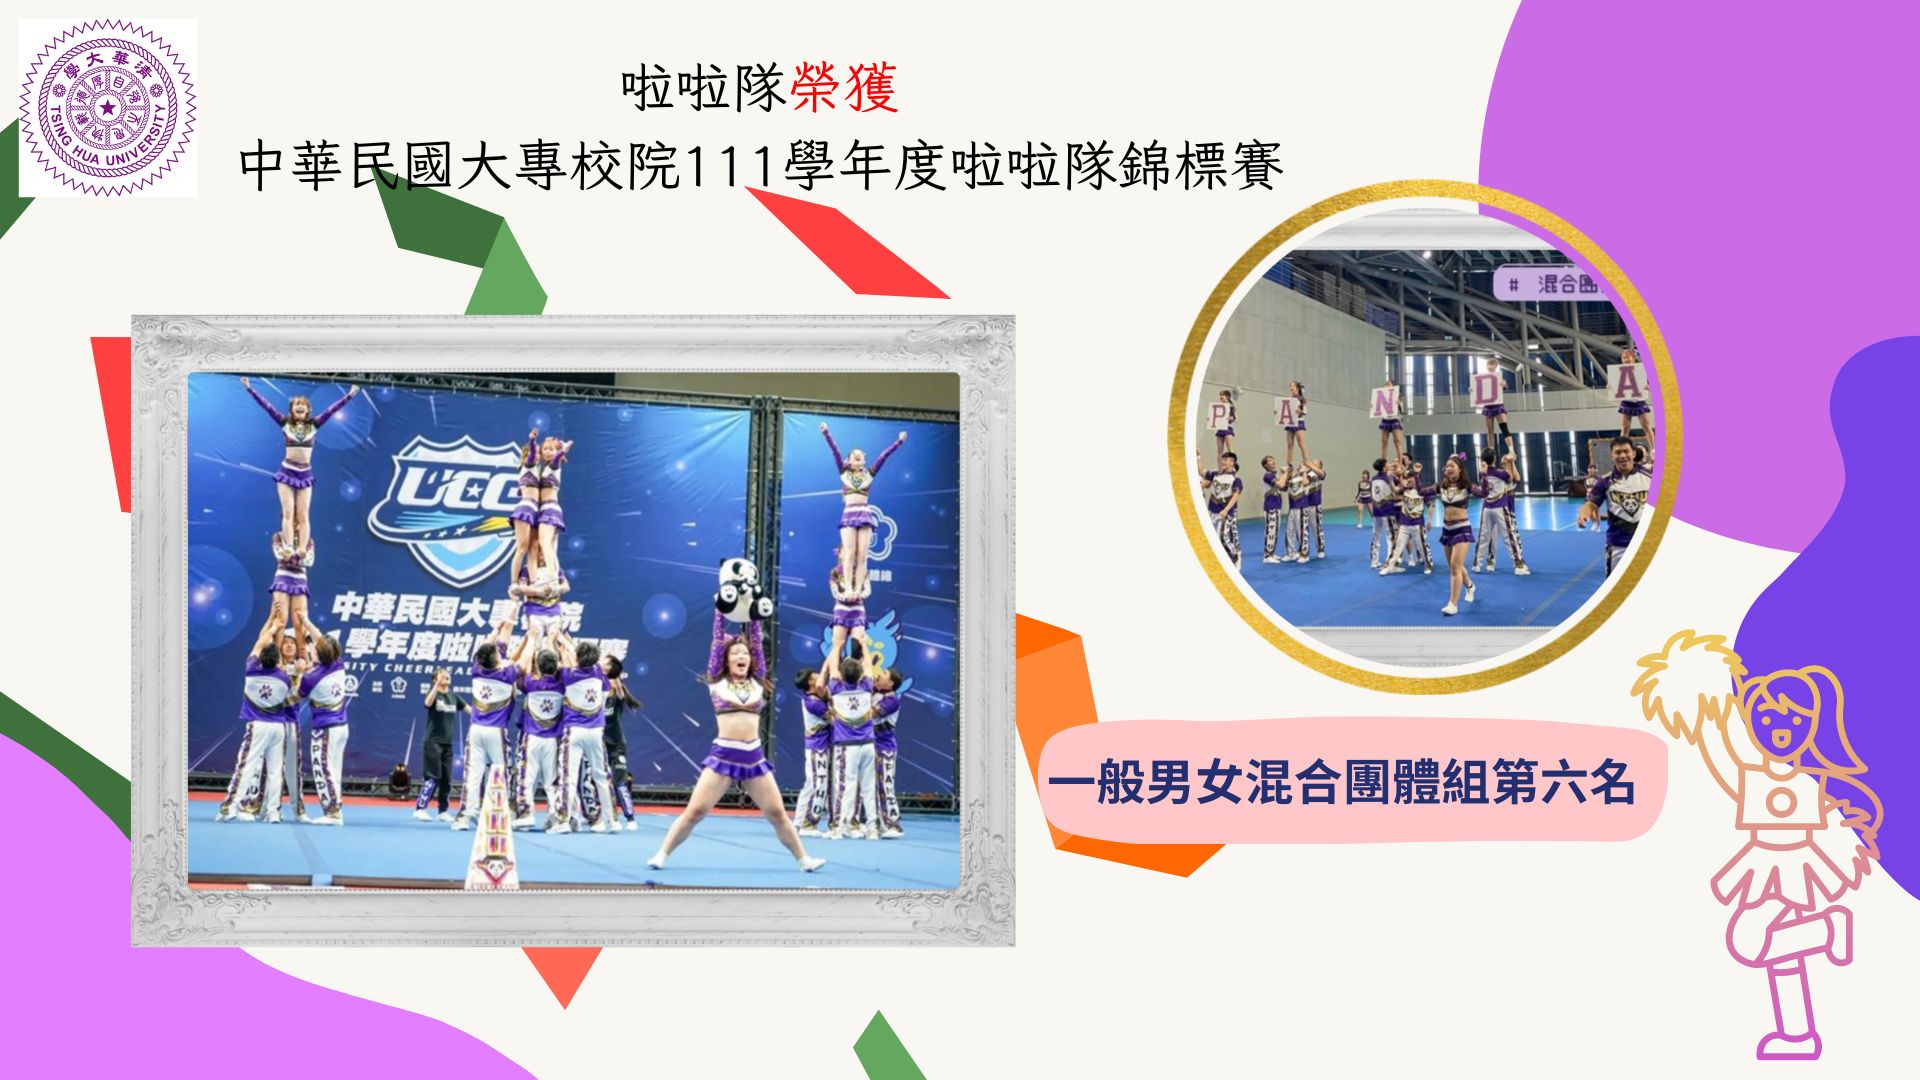 啦啦隊榮獲中華民國大專校院111學年度啦啦隊錦標賽